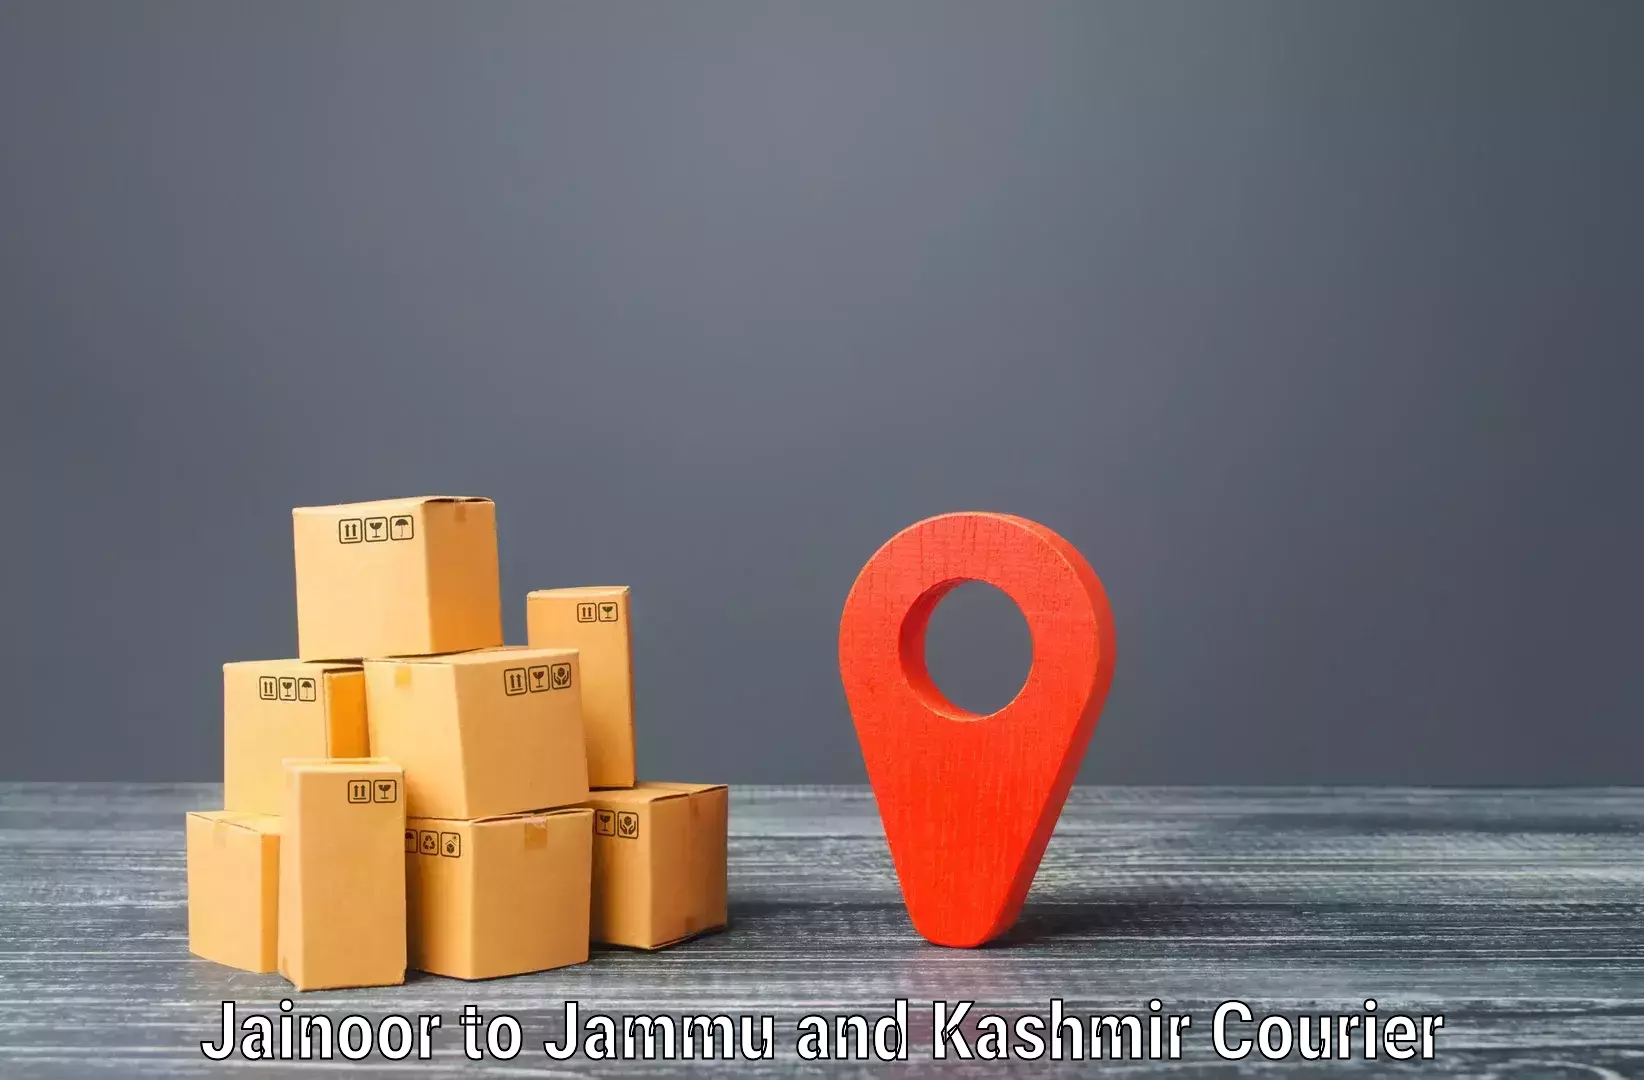 Streamlined logistics management Jainoor to Shopian